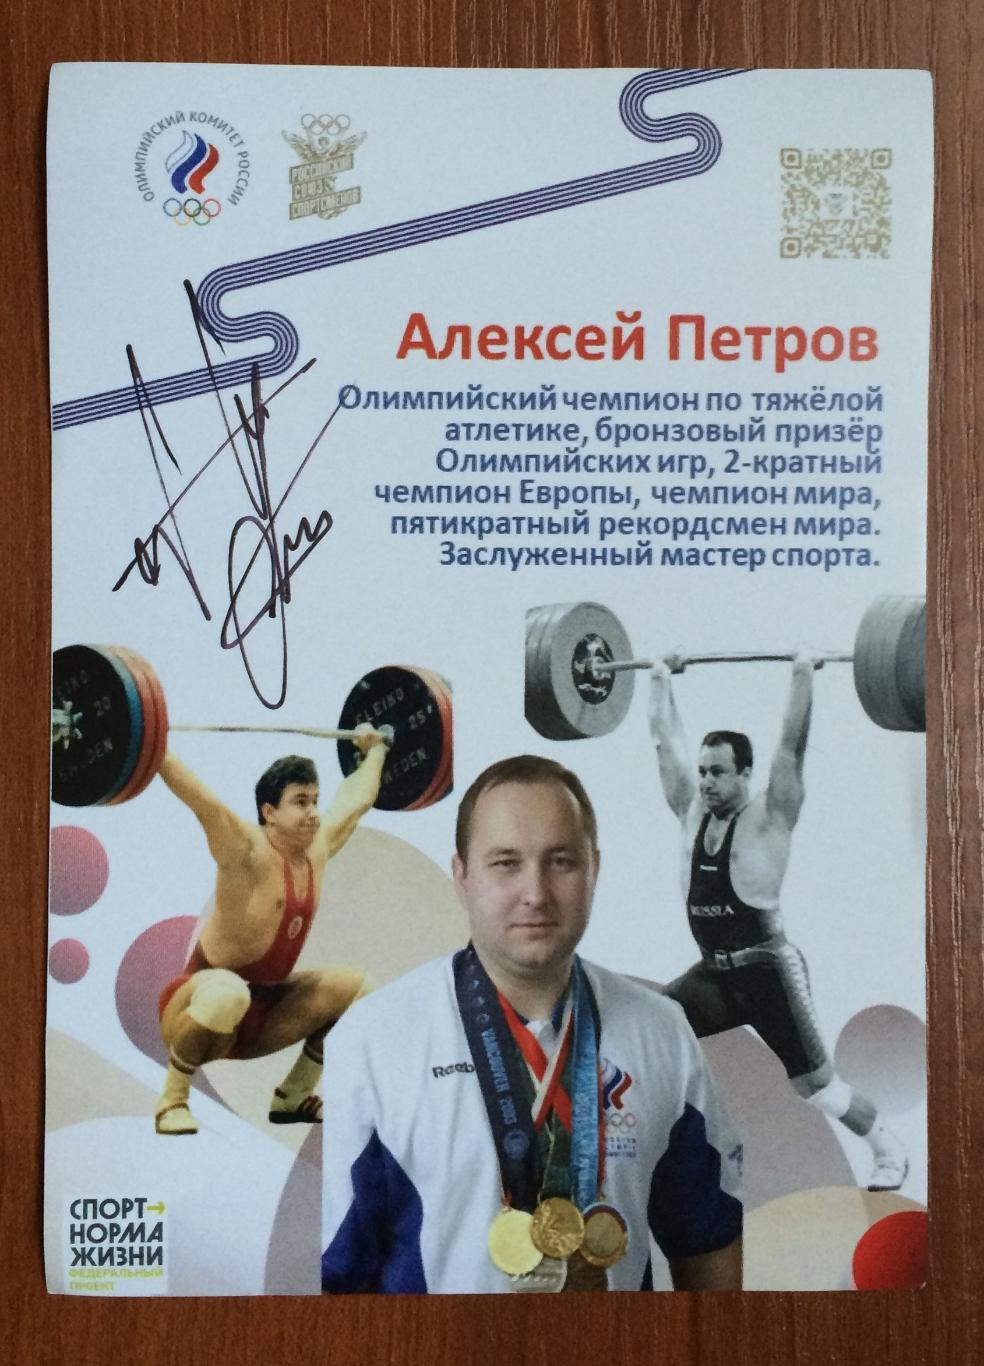 Автограф Алексей Петров тяжелая атлетика Олимпиада золото 1996 год 1